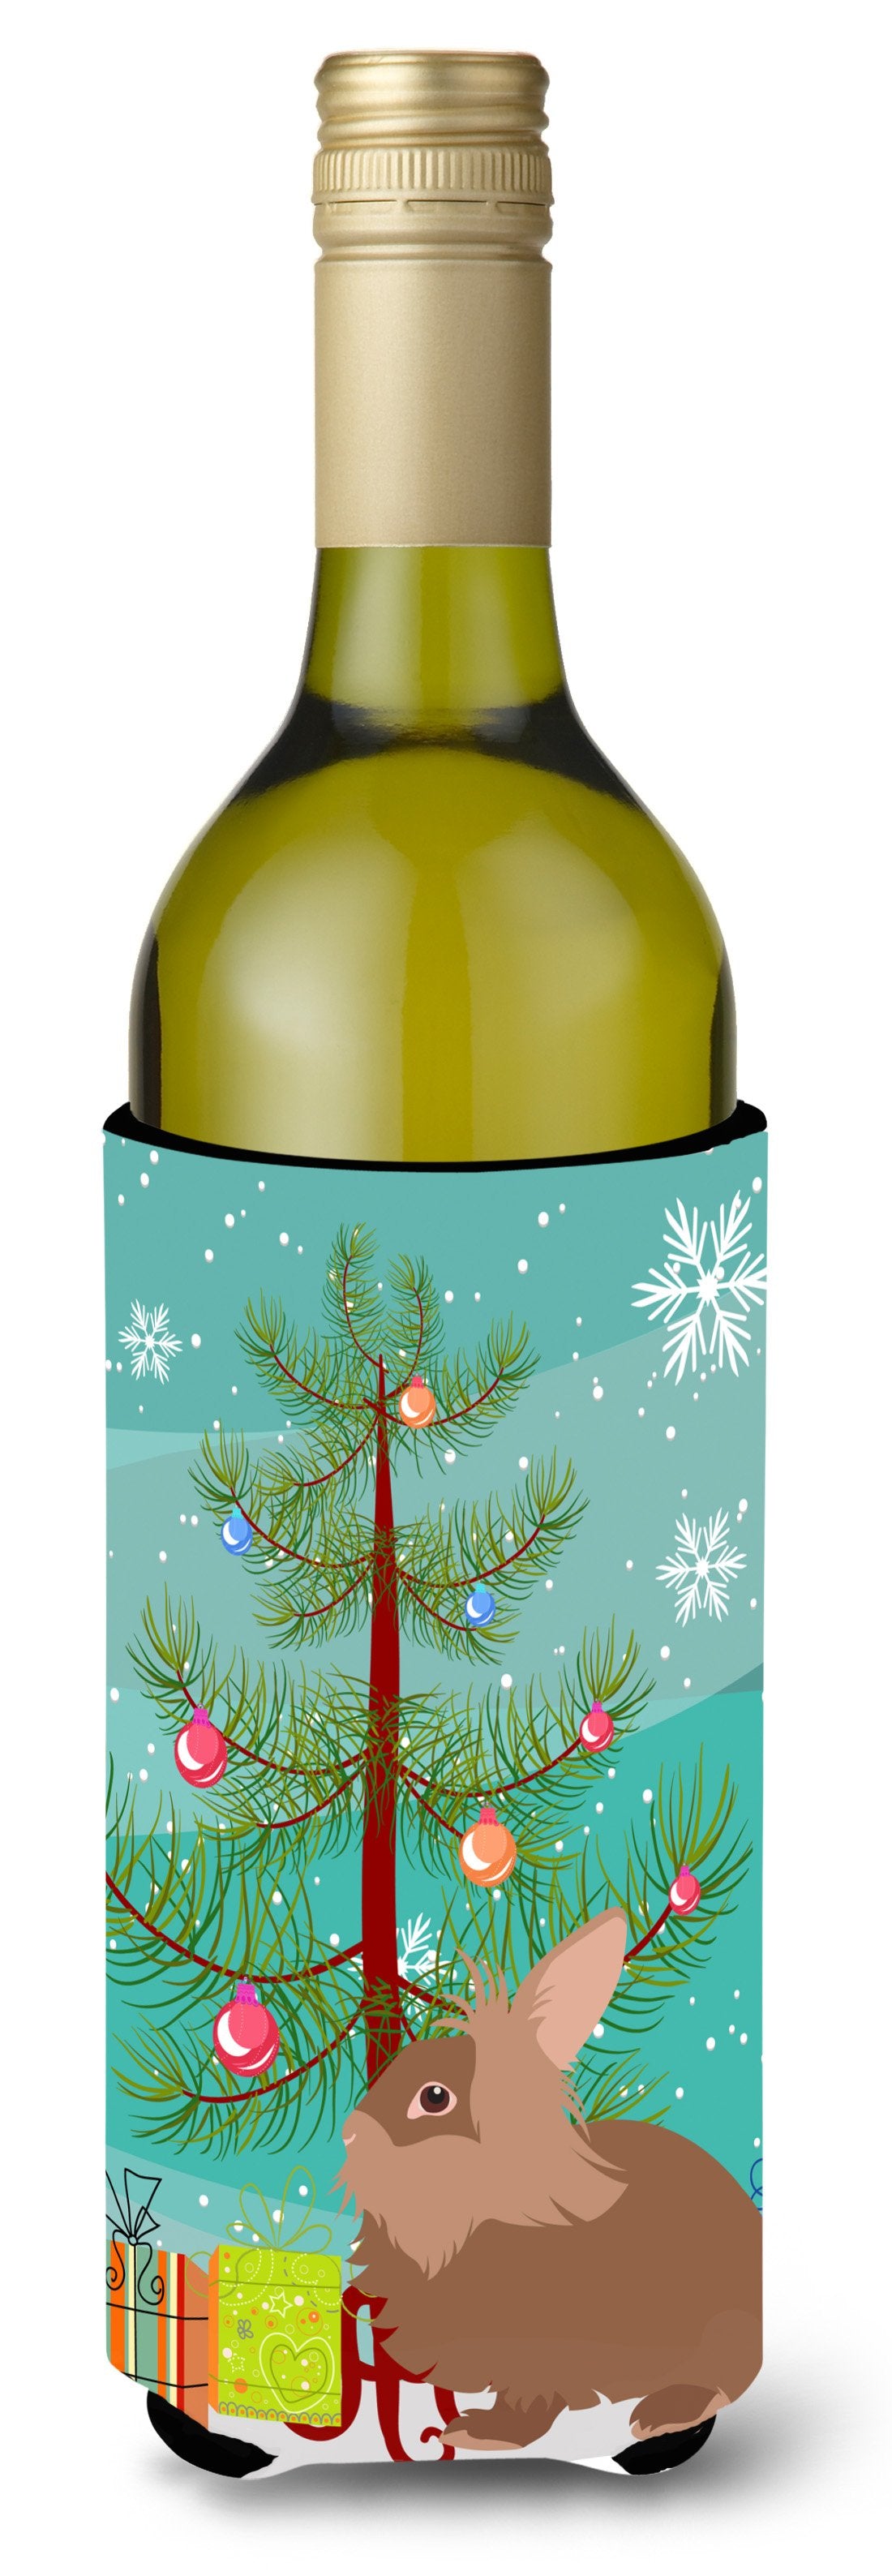 Lionhead Rabbit Christmas Wine Bottle Beverge Insulator Hugger BB9327LITERK by Caroline's Treasures